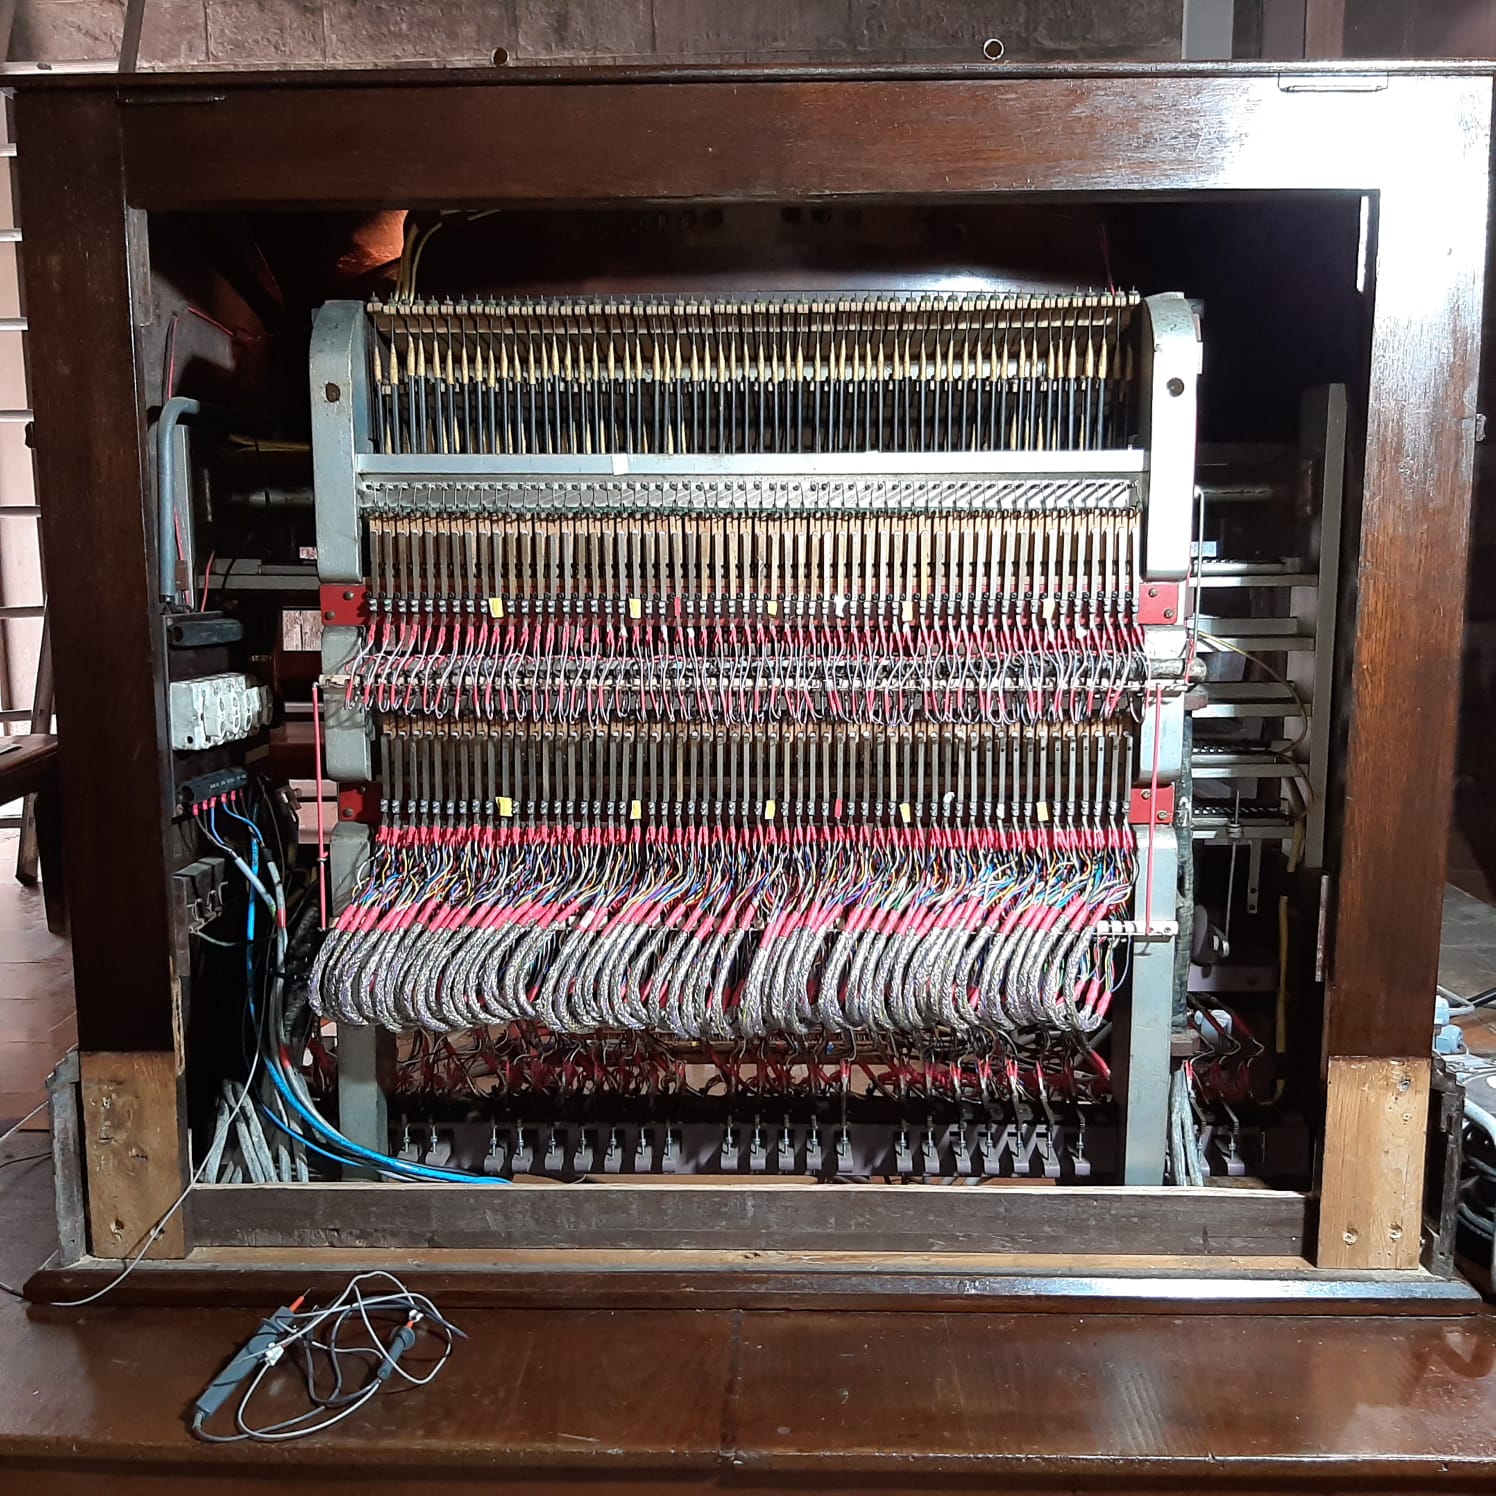 Cardona culmina la restauració del seu orgue amb un acte d'inauguració aquest diumenge